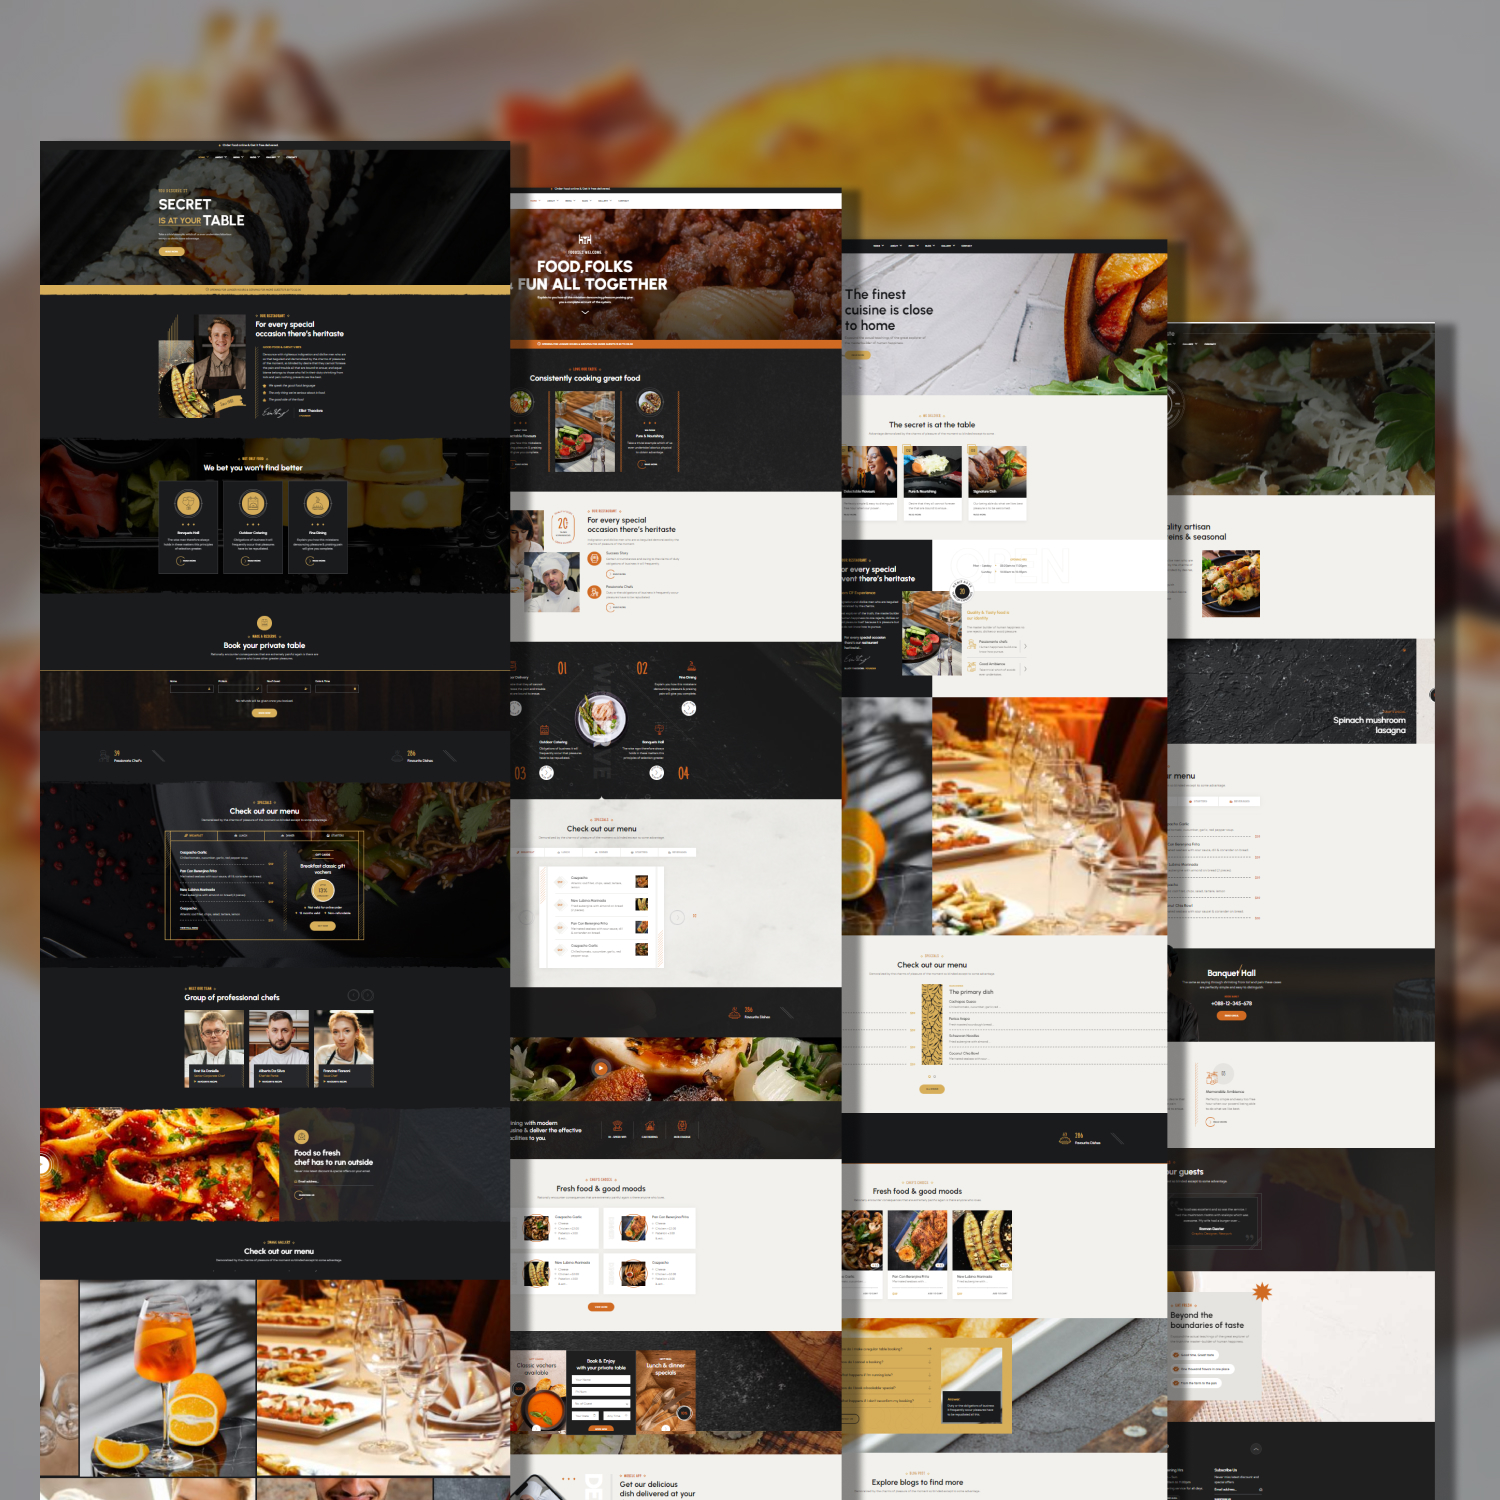 Heritaste - Restaurant WordPress Theme cover.